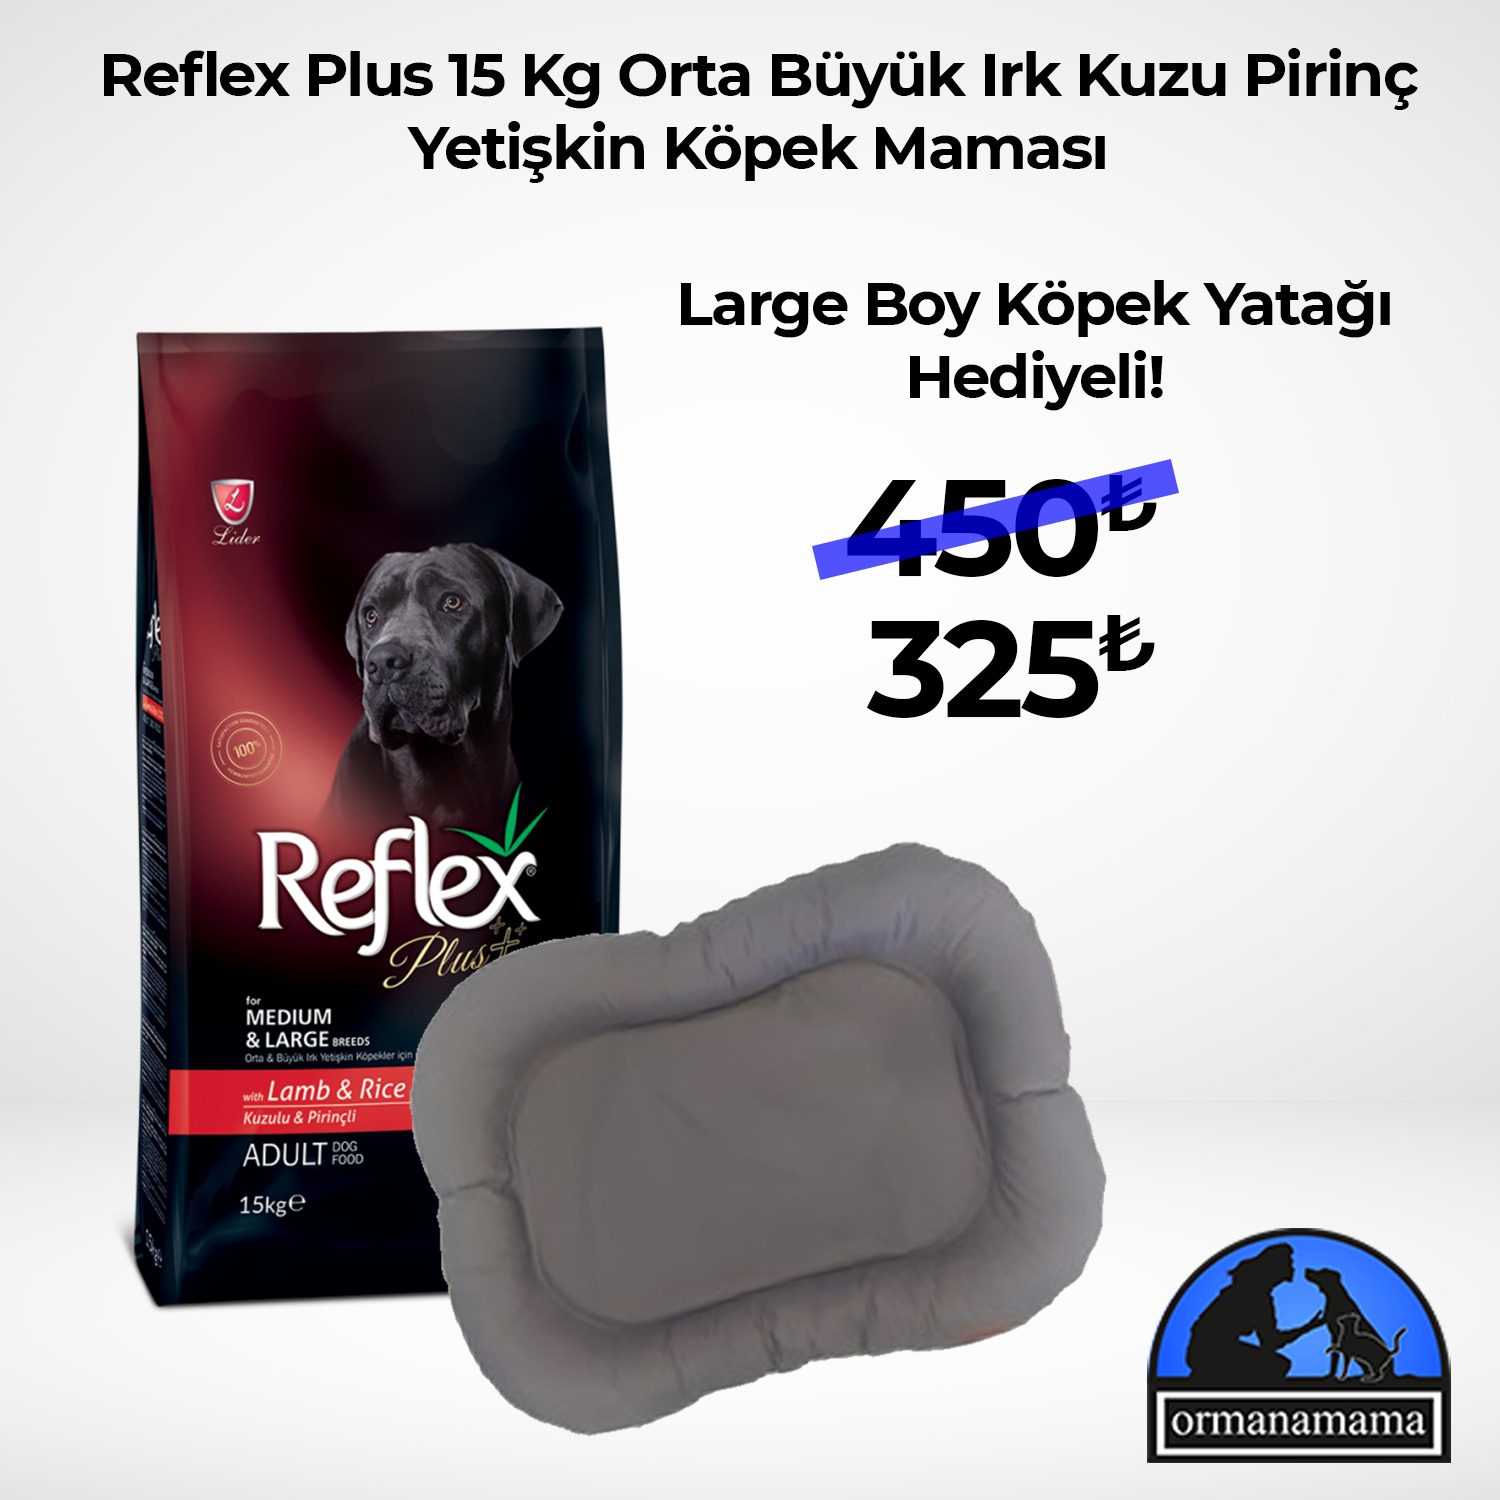 Reflex Plus Orta Büyük Irk Kuzu Pirinç Yetişkin Köpek Maması 15 Kg + Large Boy Köpek Yatağı Hediyeli